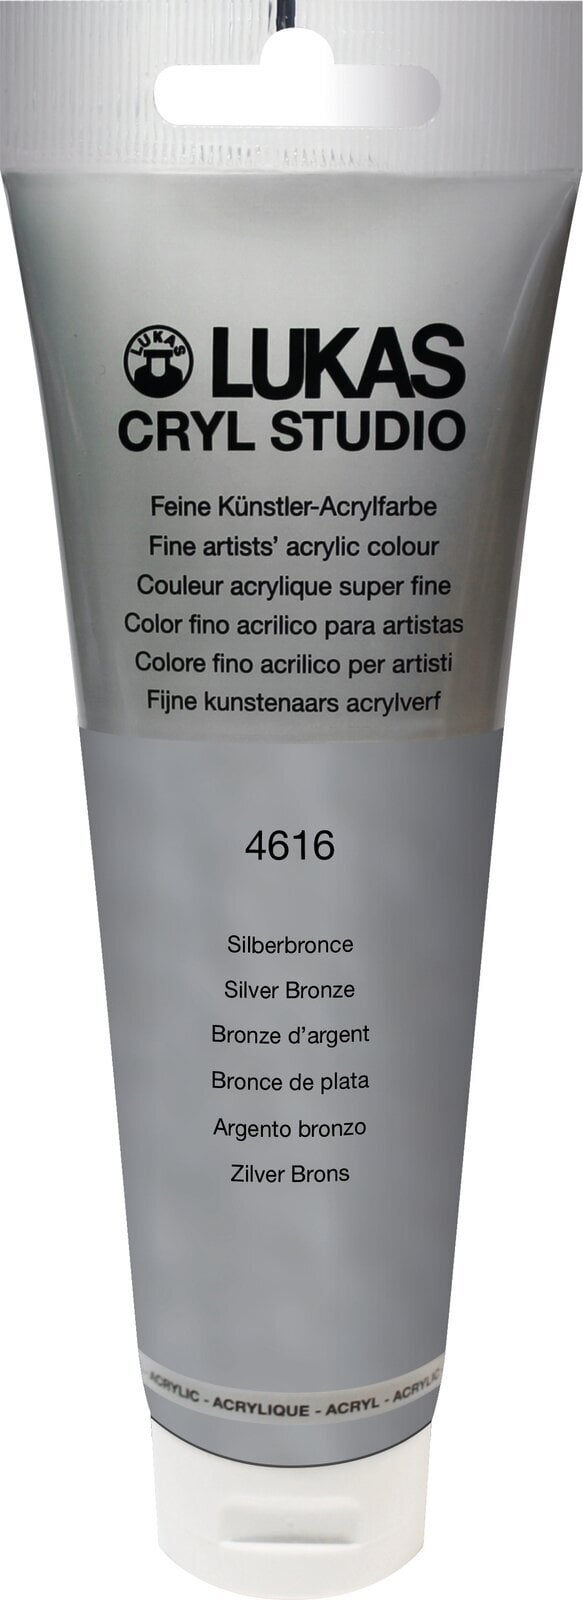 Tinta acrílica Lukas Cryl Studio Tinta acrílica 125 ml Silver Bronze